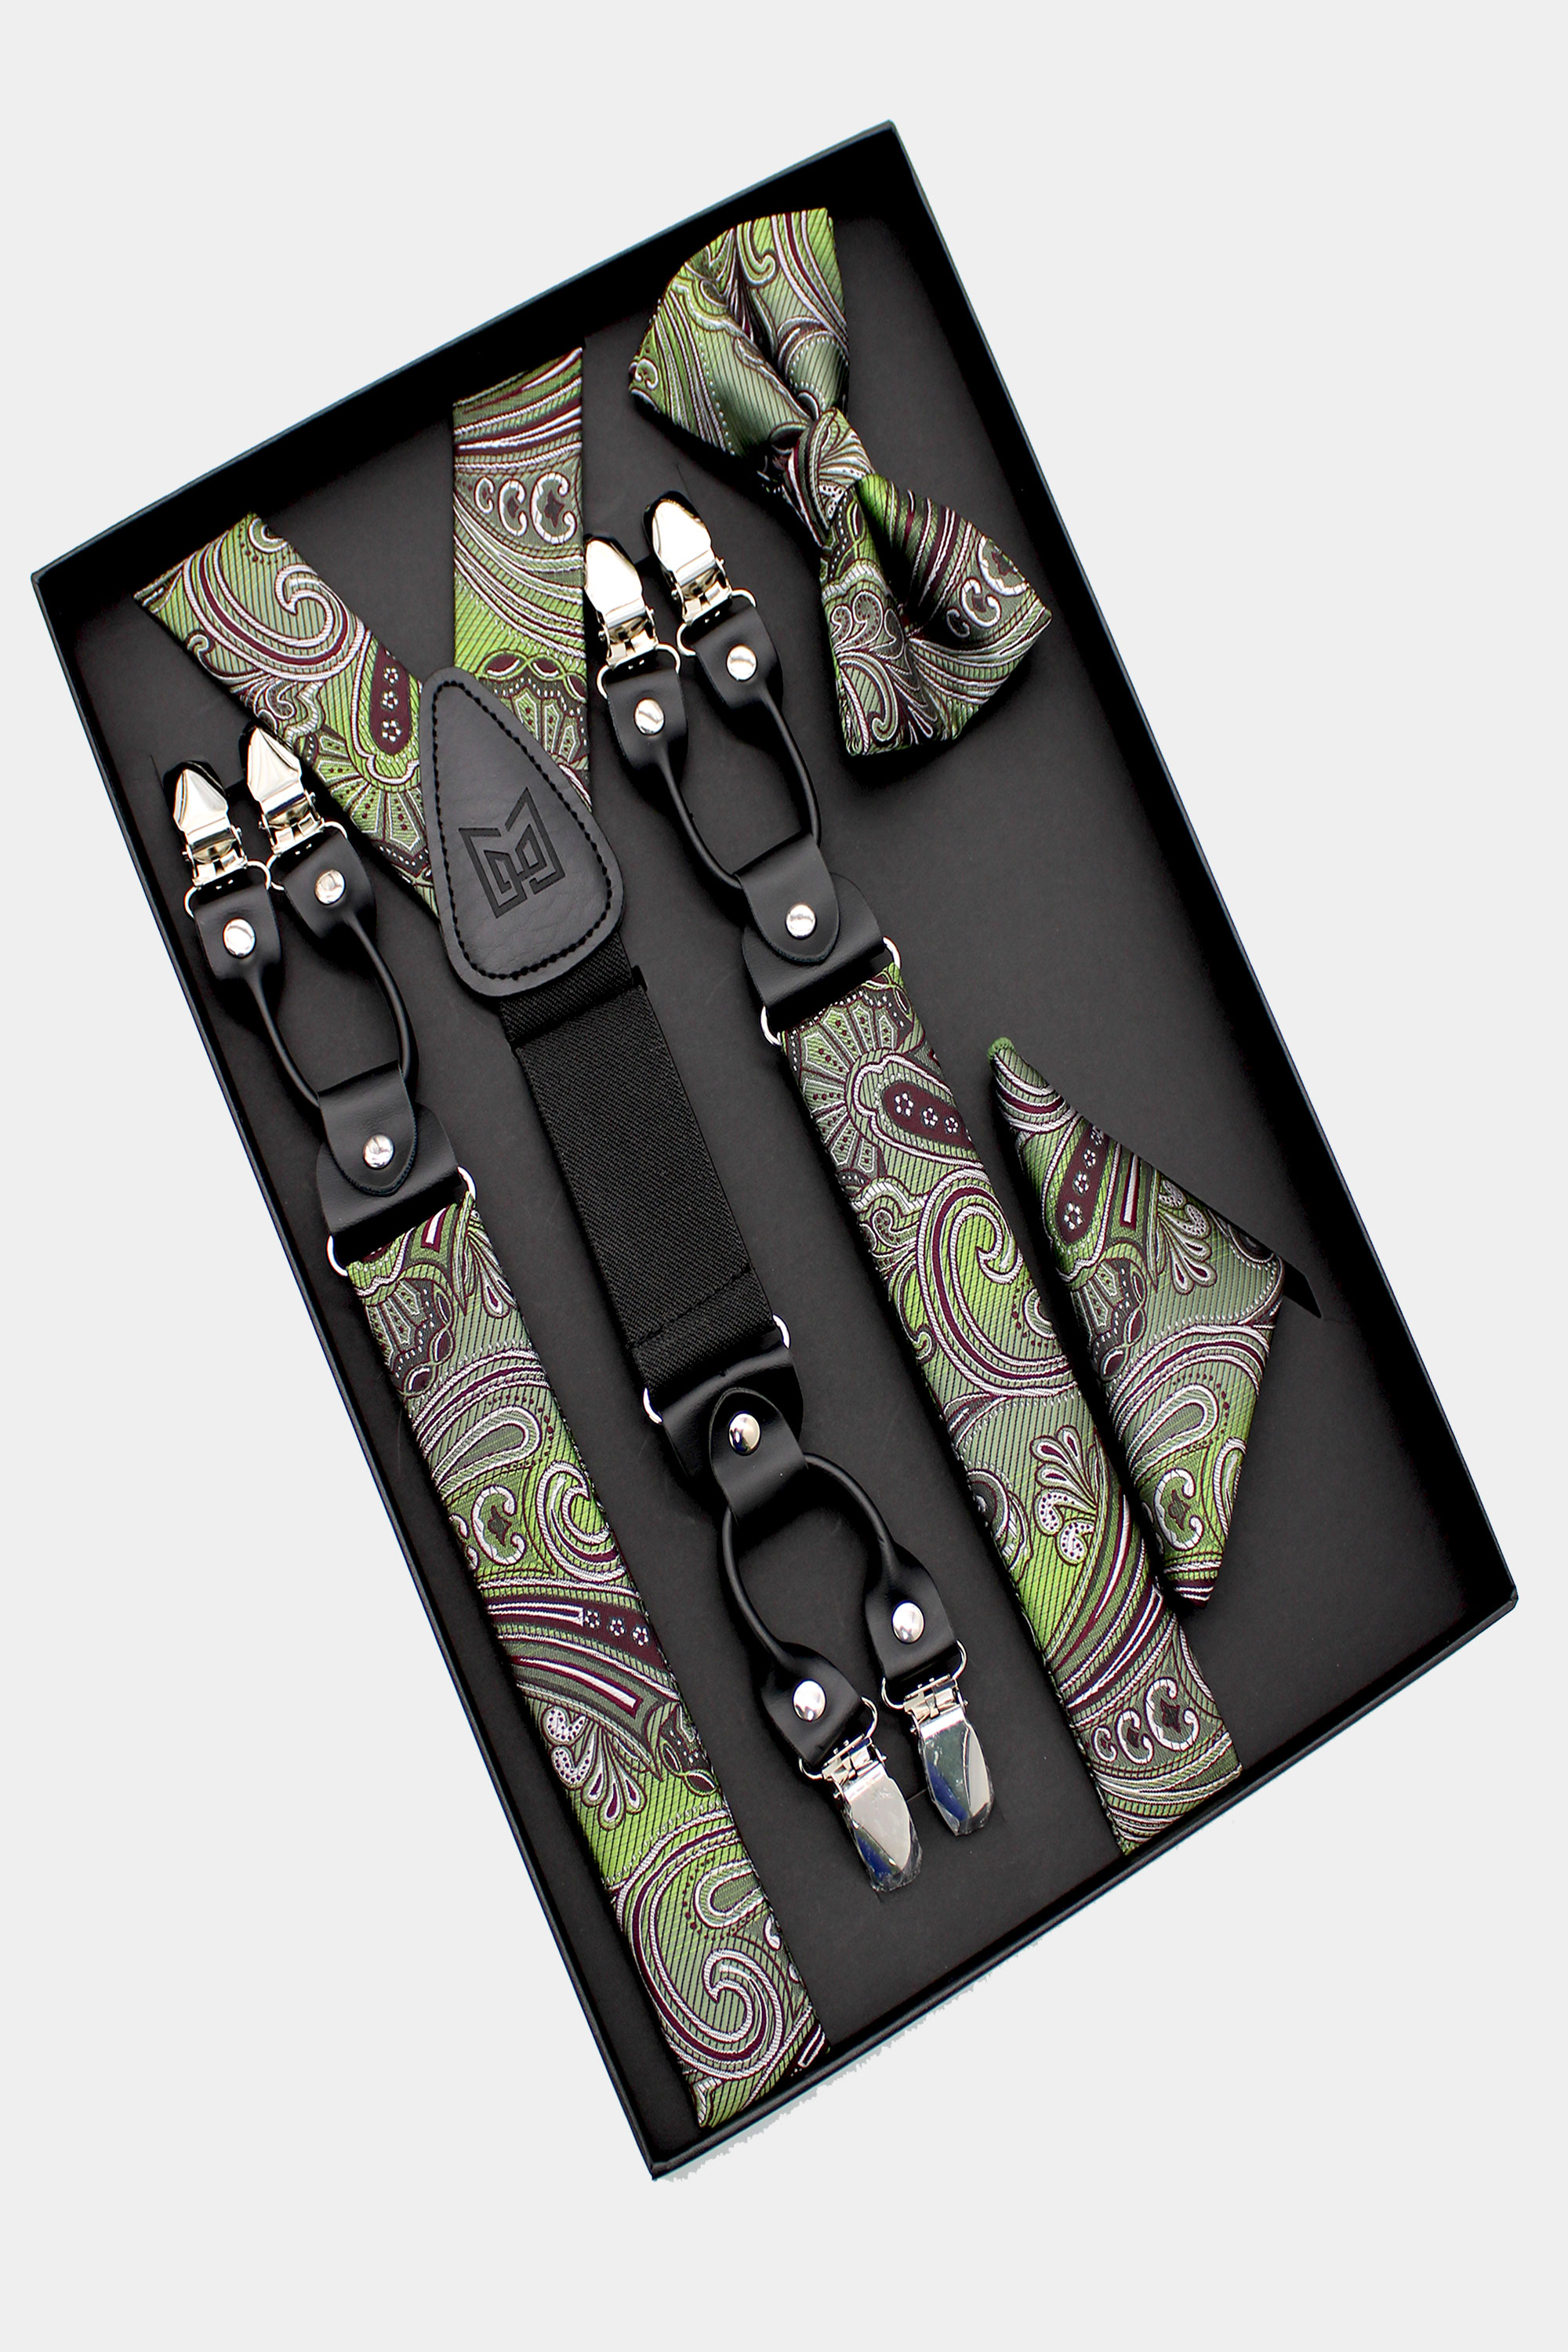 Olive-Green-Bow-Tie-and-Suspenders-Wedding-Groomsmen-For-Men-from-Gentlemansguru.com